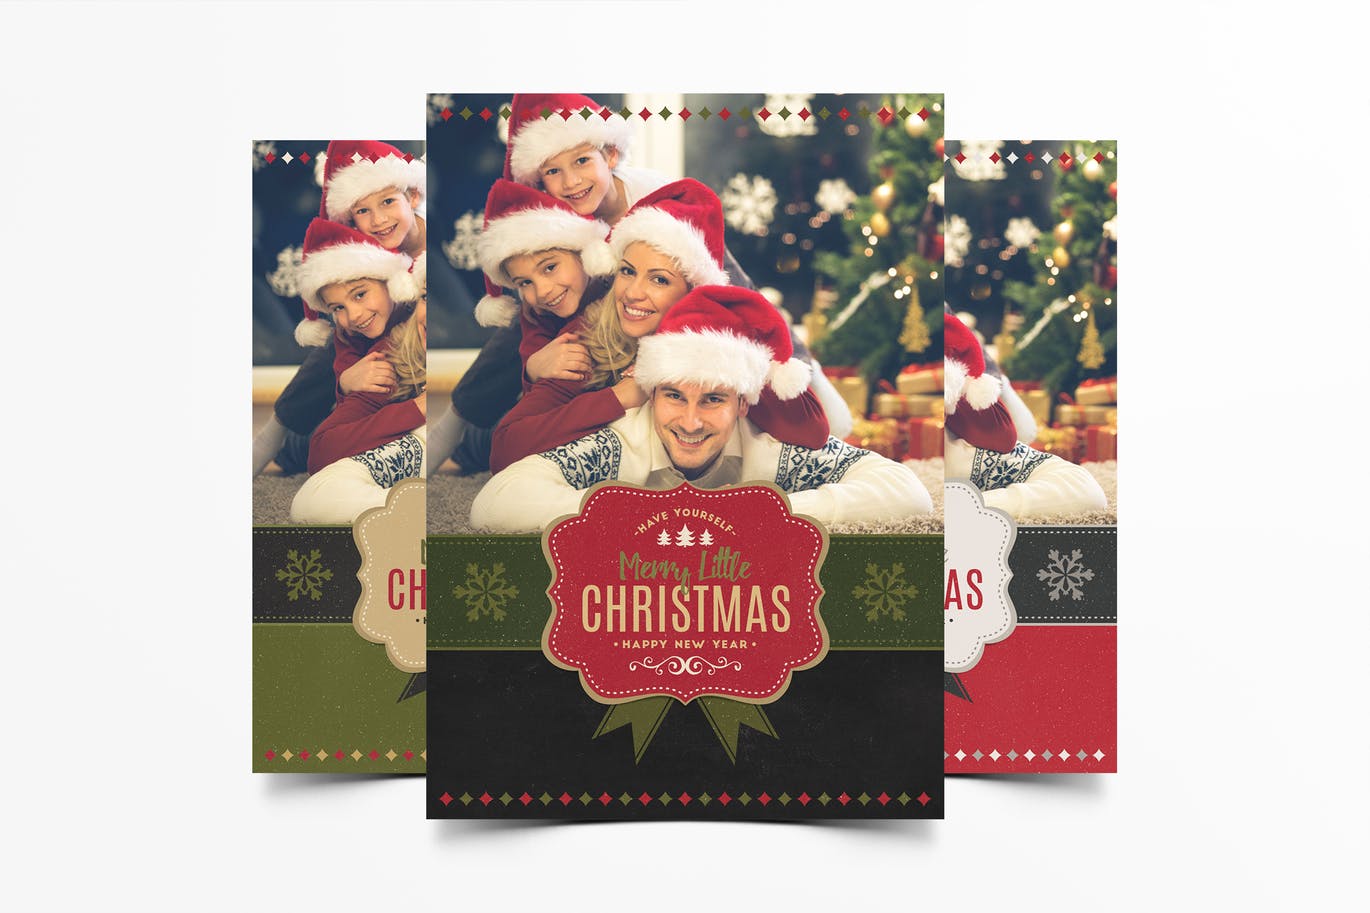 温馨圣诞节主题照片贺卡设计模板 Christmas Greeting Photo Card插图